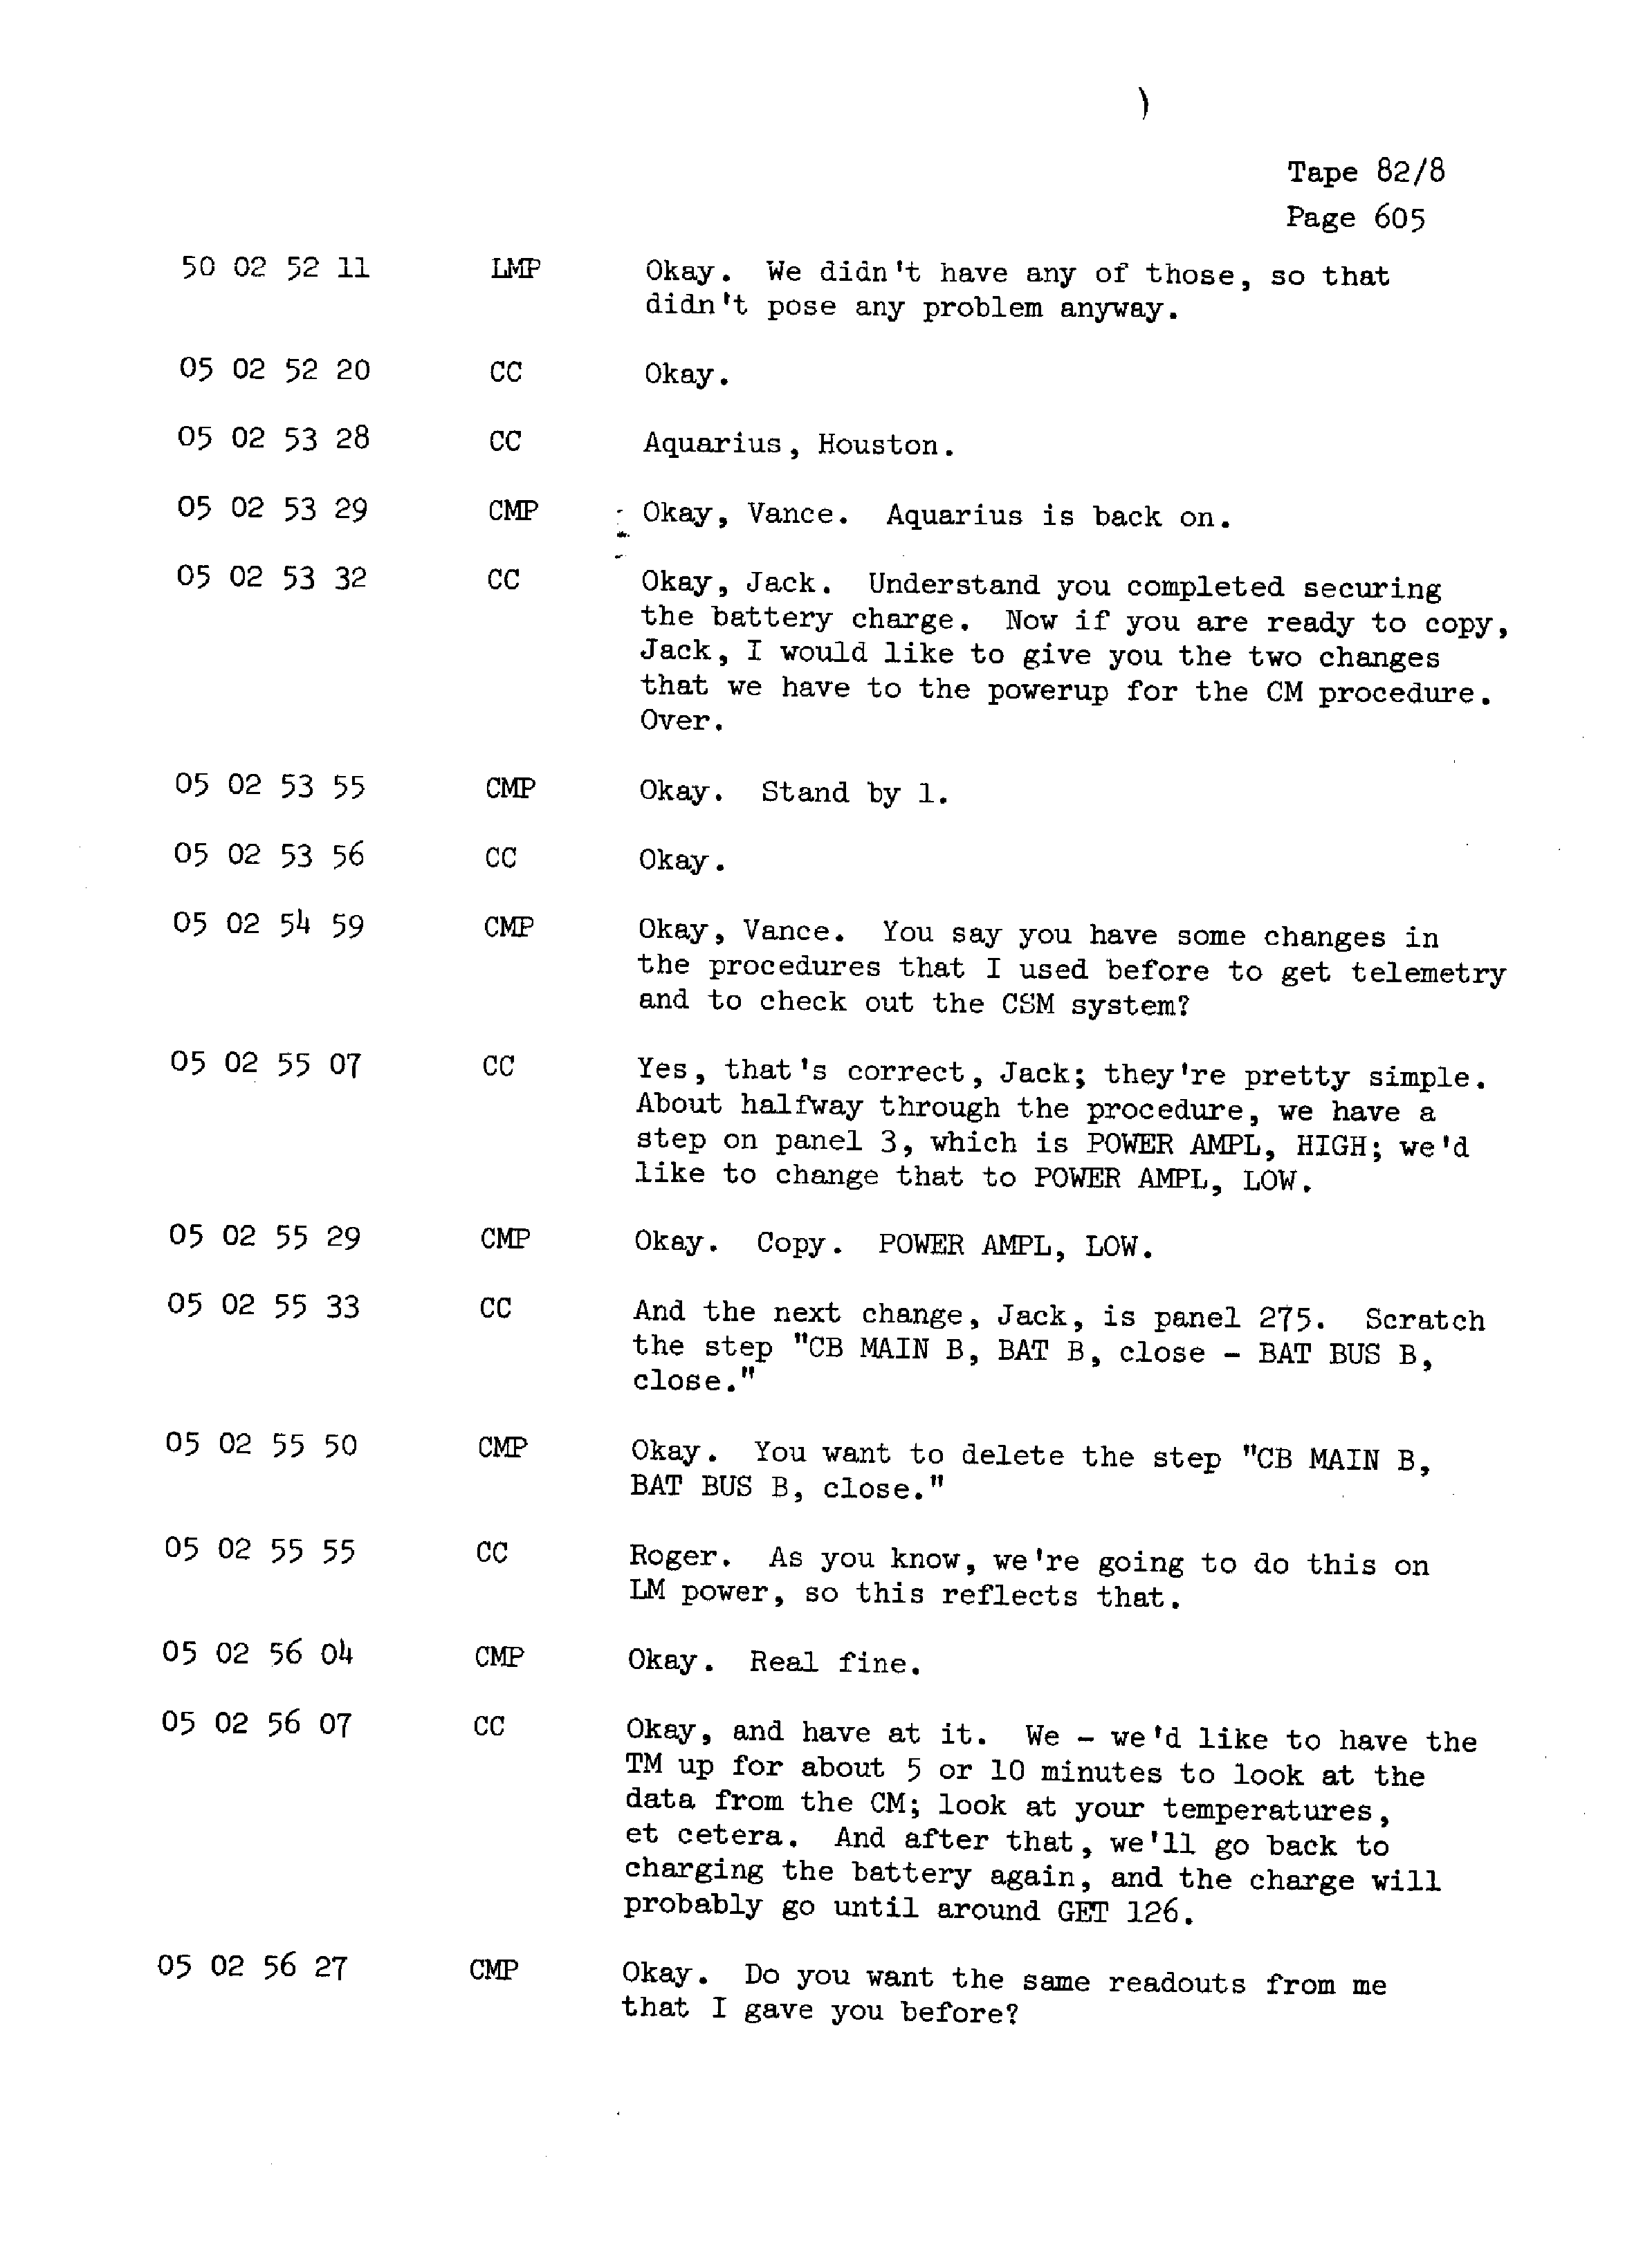 Page 612 of Apollo 13’s original transcript